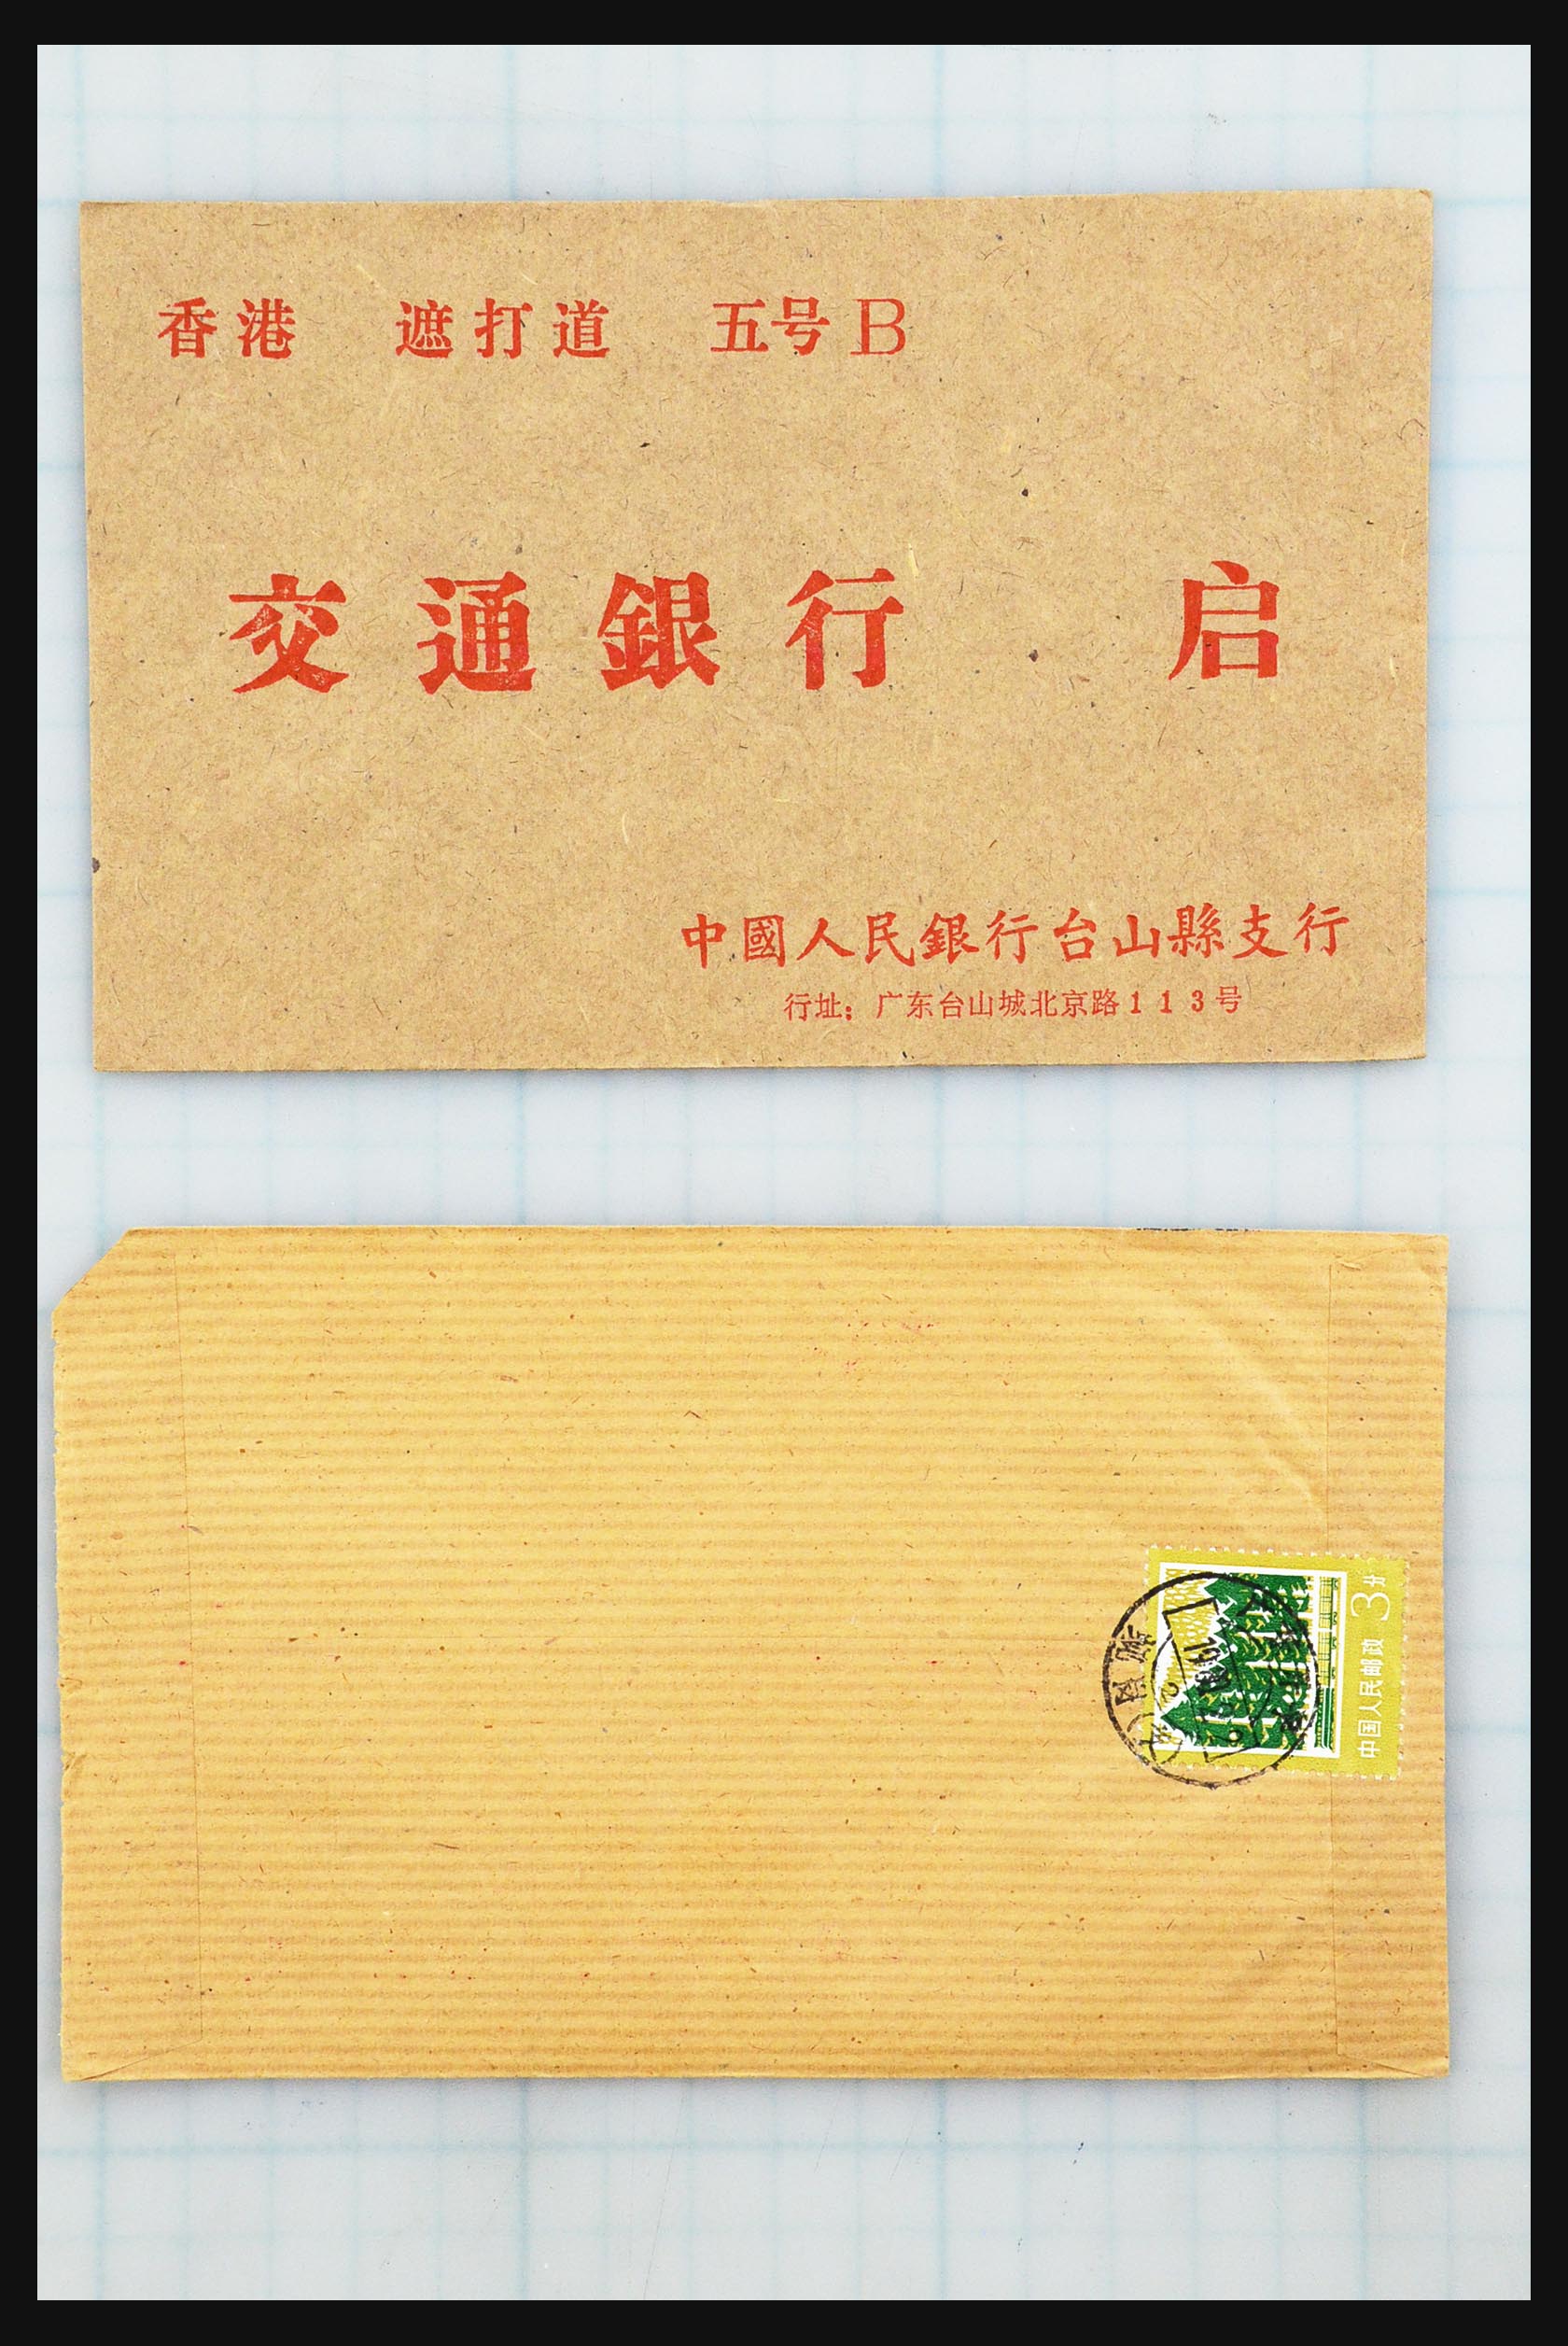 31355 069 - 31355 Azië brieven 1900-1980.